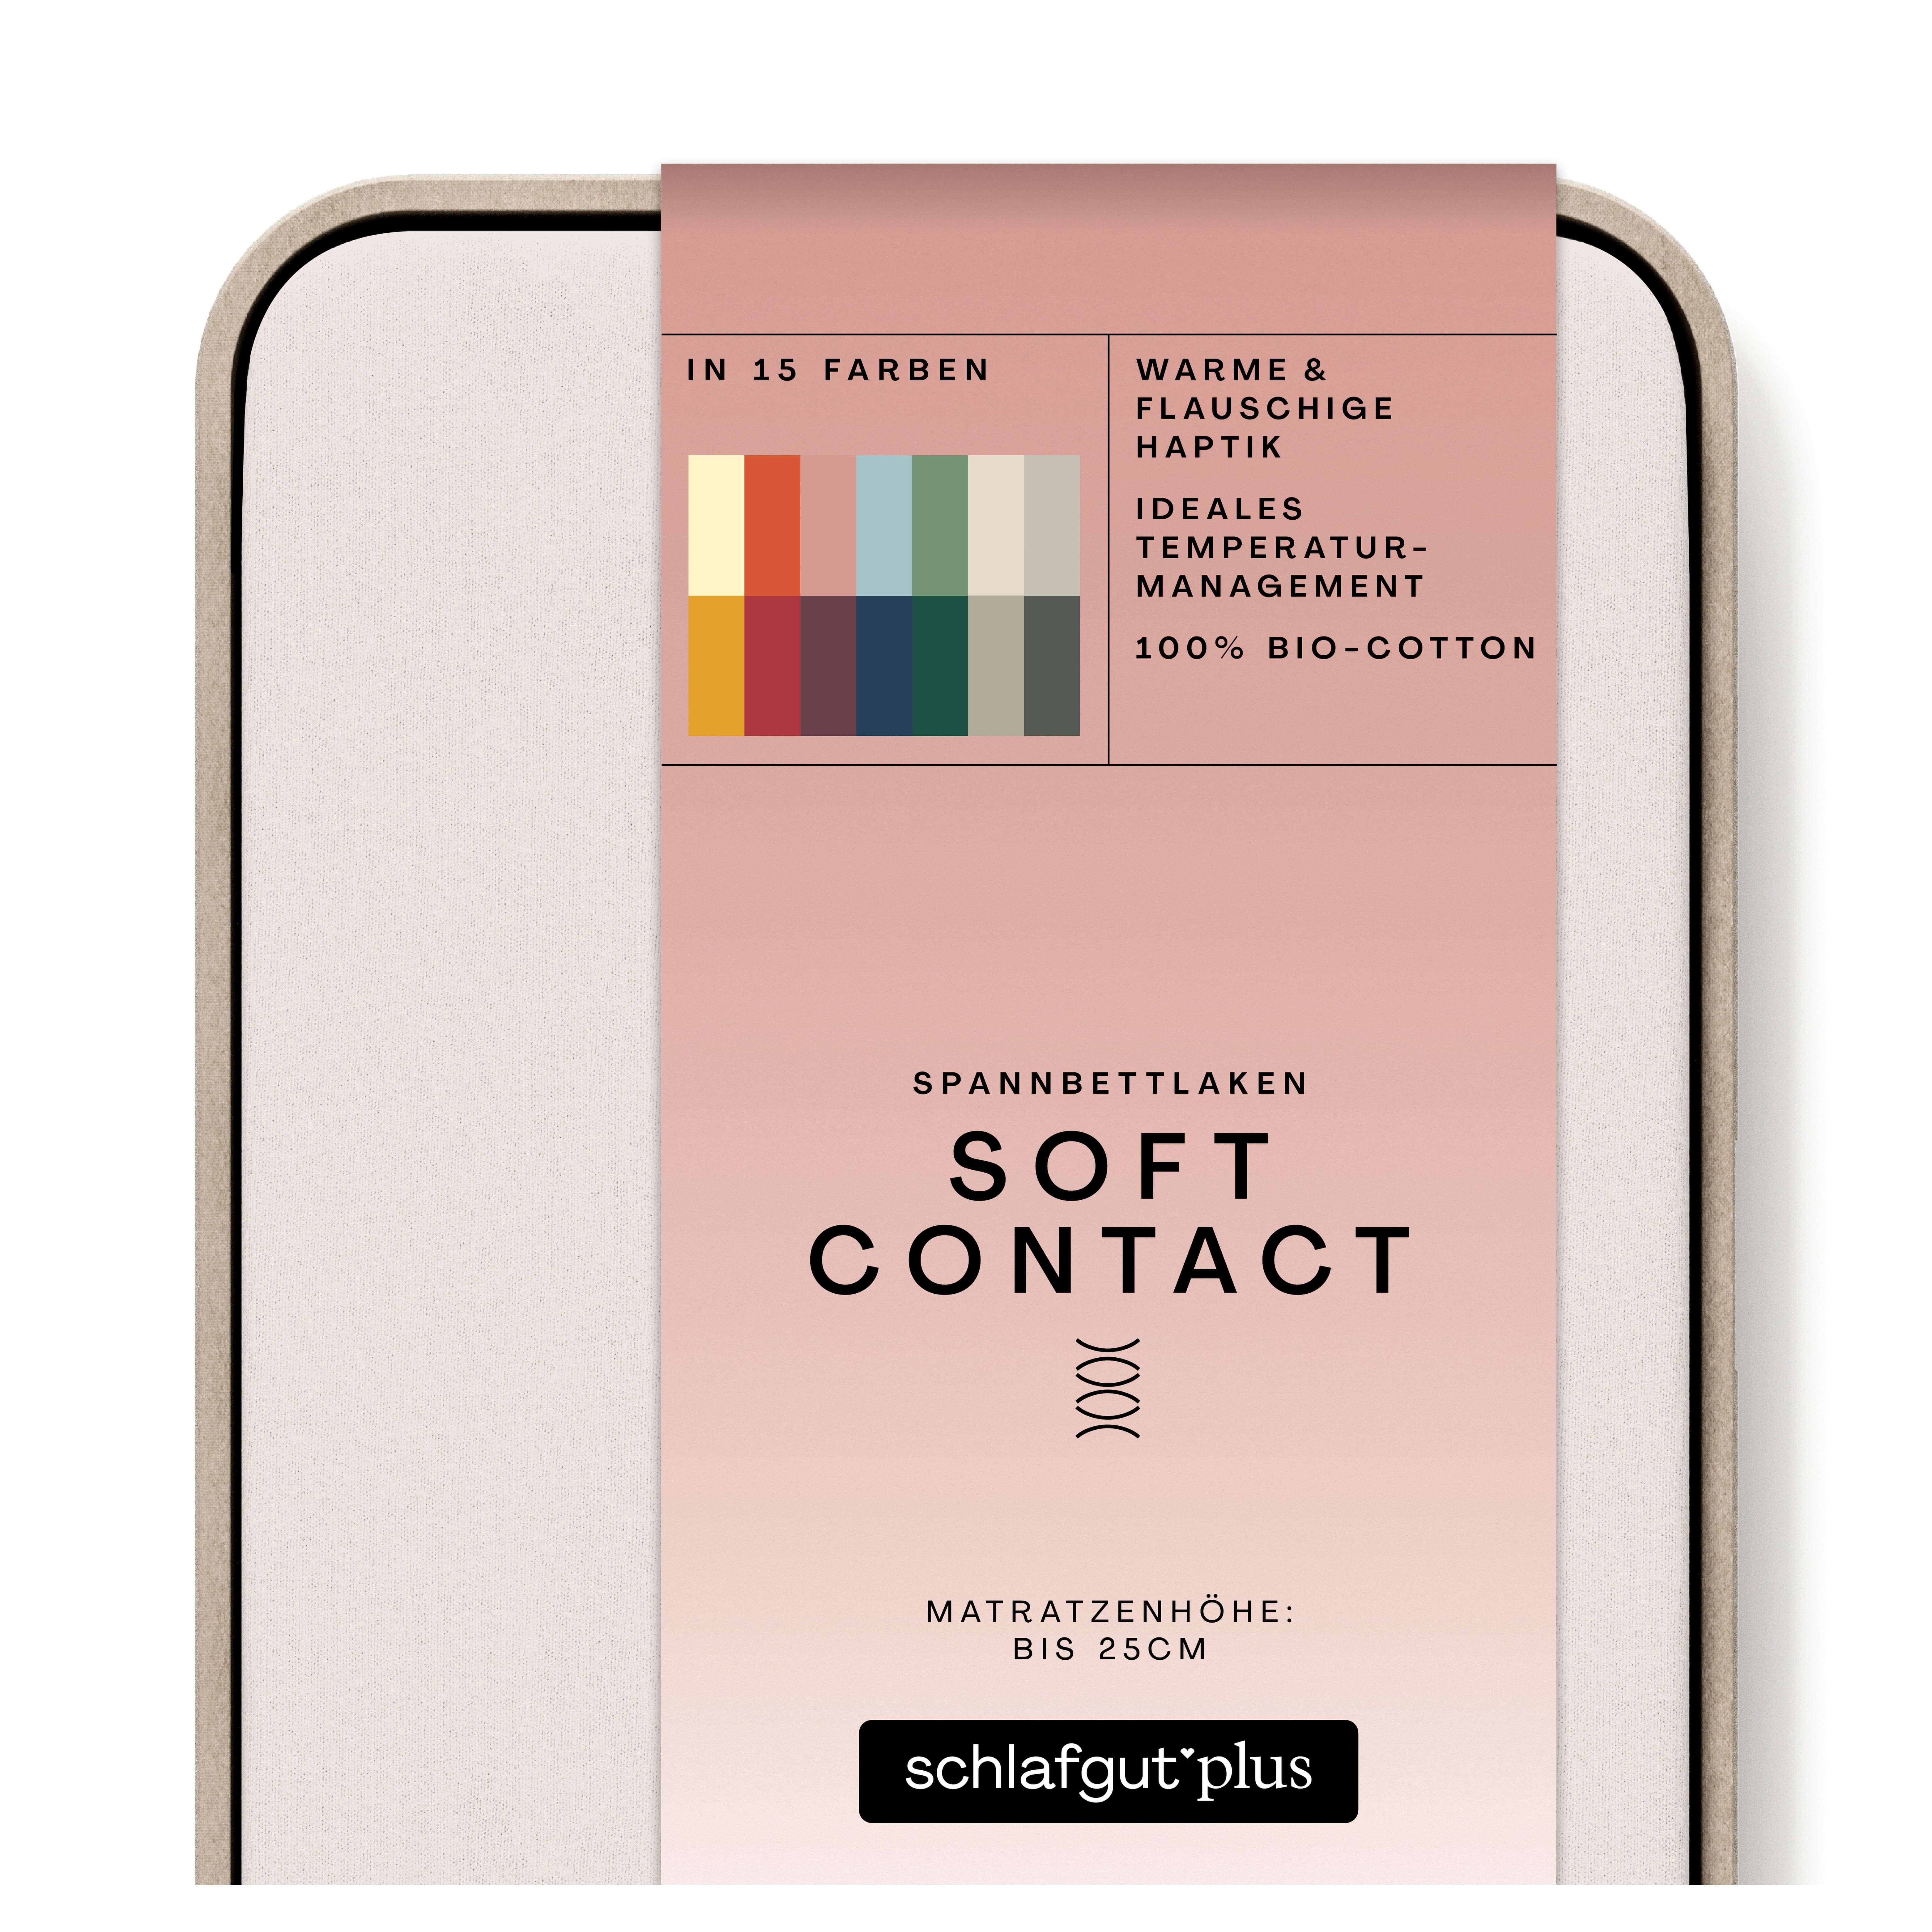 Das Produktbild vom Spannbettlaken der Reihe Soft Contact in Farbe sand light von Schlafgut